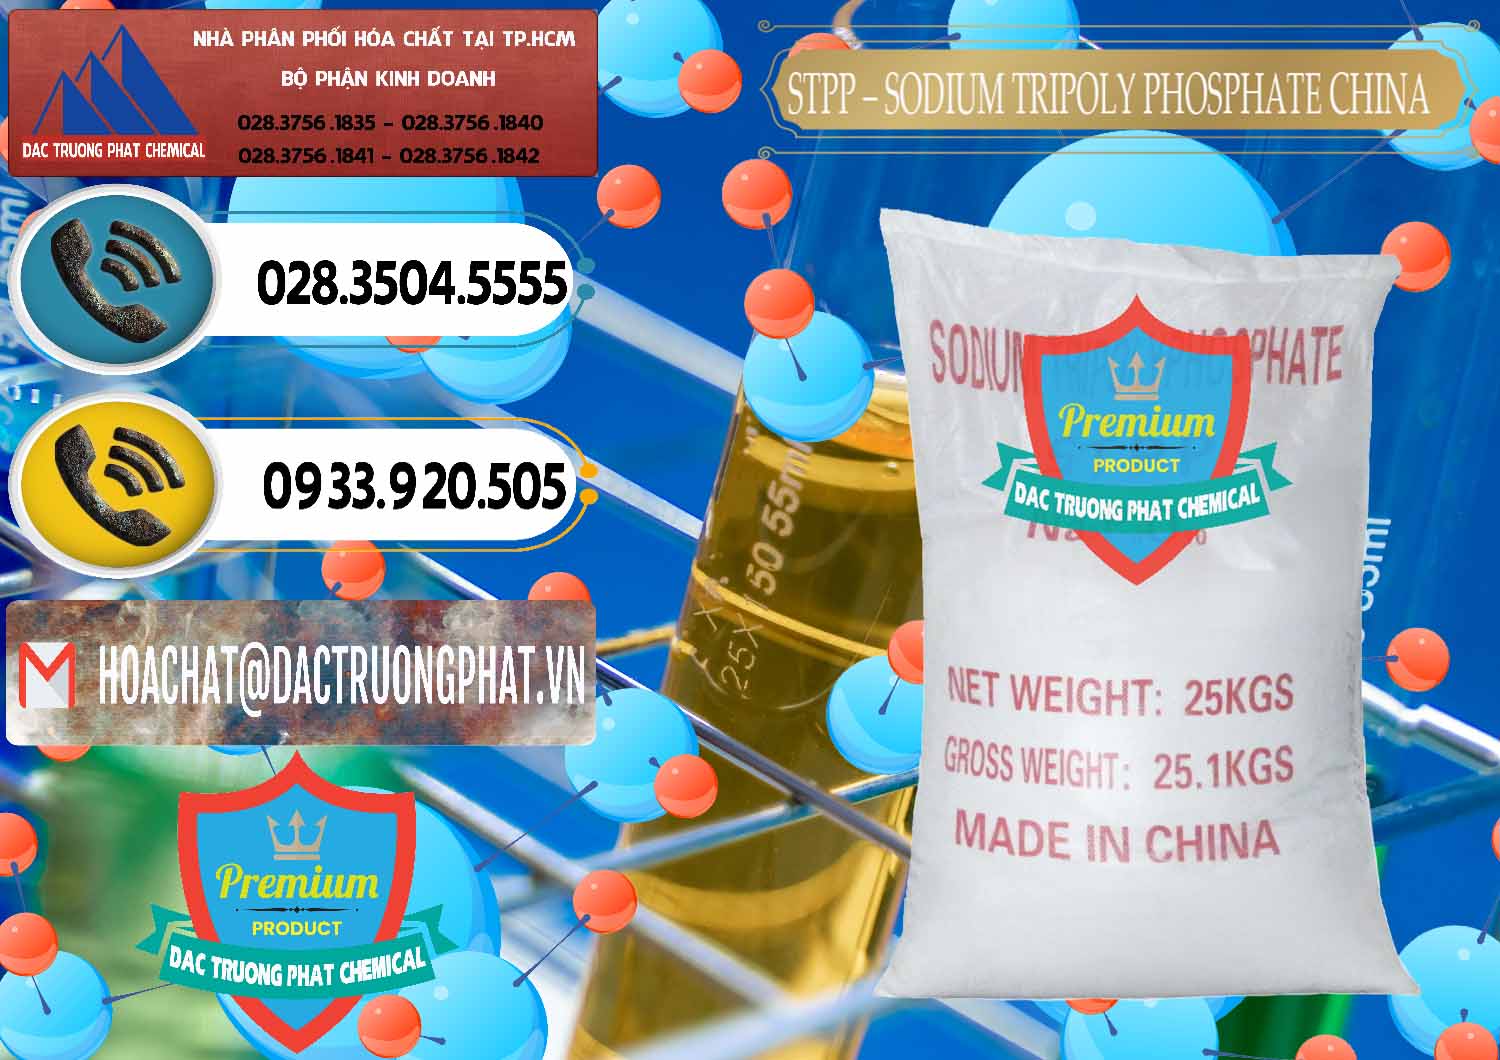 Nơi bán và phân phối Sodium Tripoly Phosphate - STPP 96% Chữ Đỏ Trung Quốc China - 0155 - Cung cấp và nhập khẩu hóa chất tại TP.HCM - hoachatdetnhuom.vn